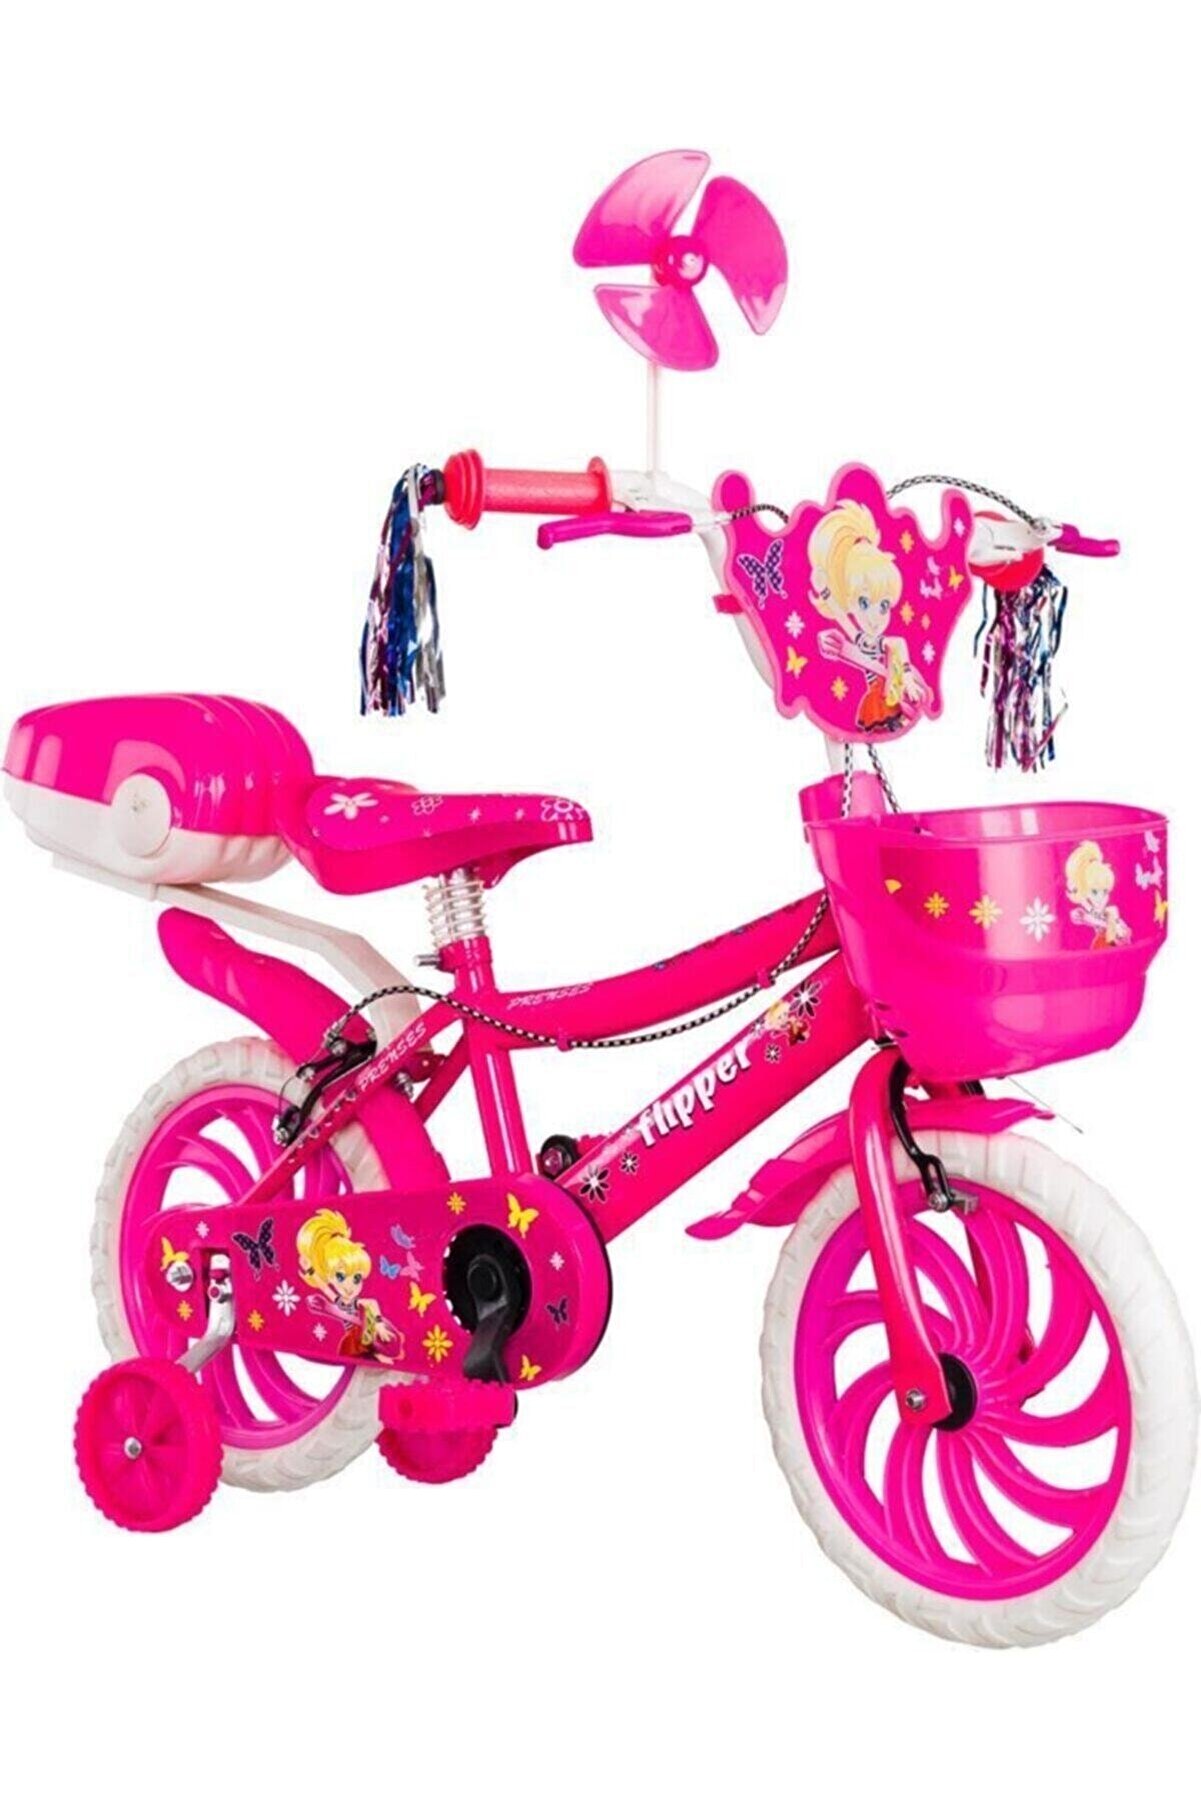 Flipper Pembe Kız Çocuk Bisikleti 15 Jant 2021 Yeni Sezon